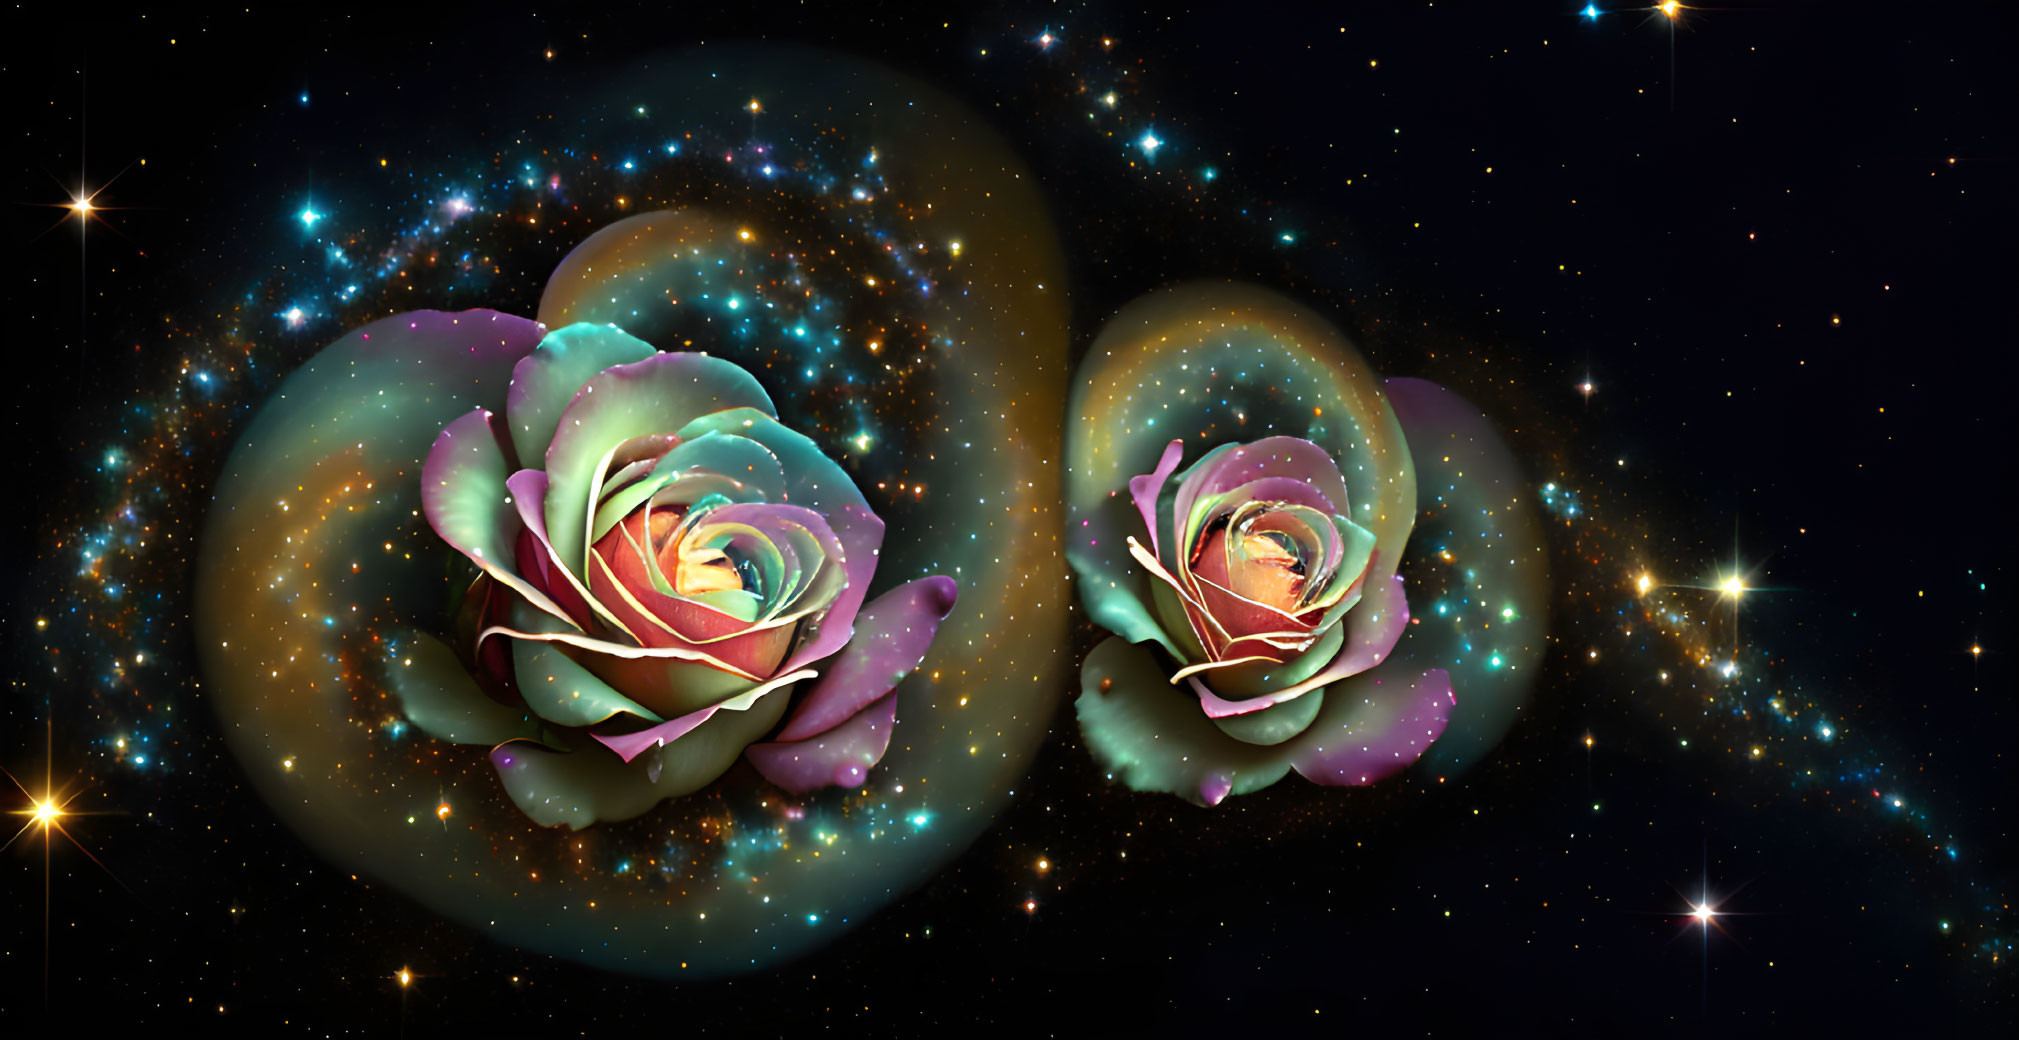 Cosmic roses 